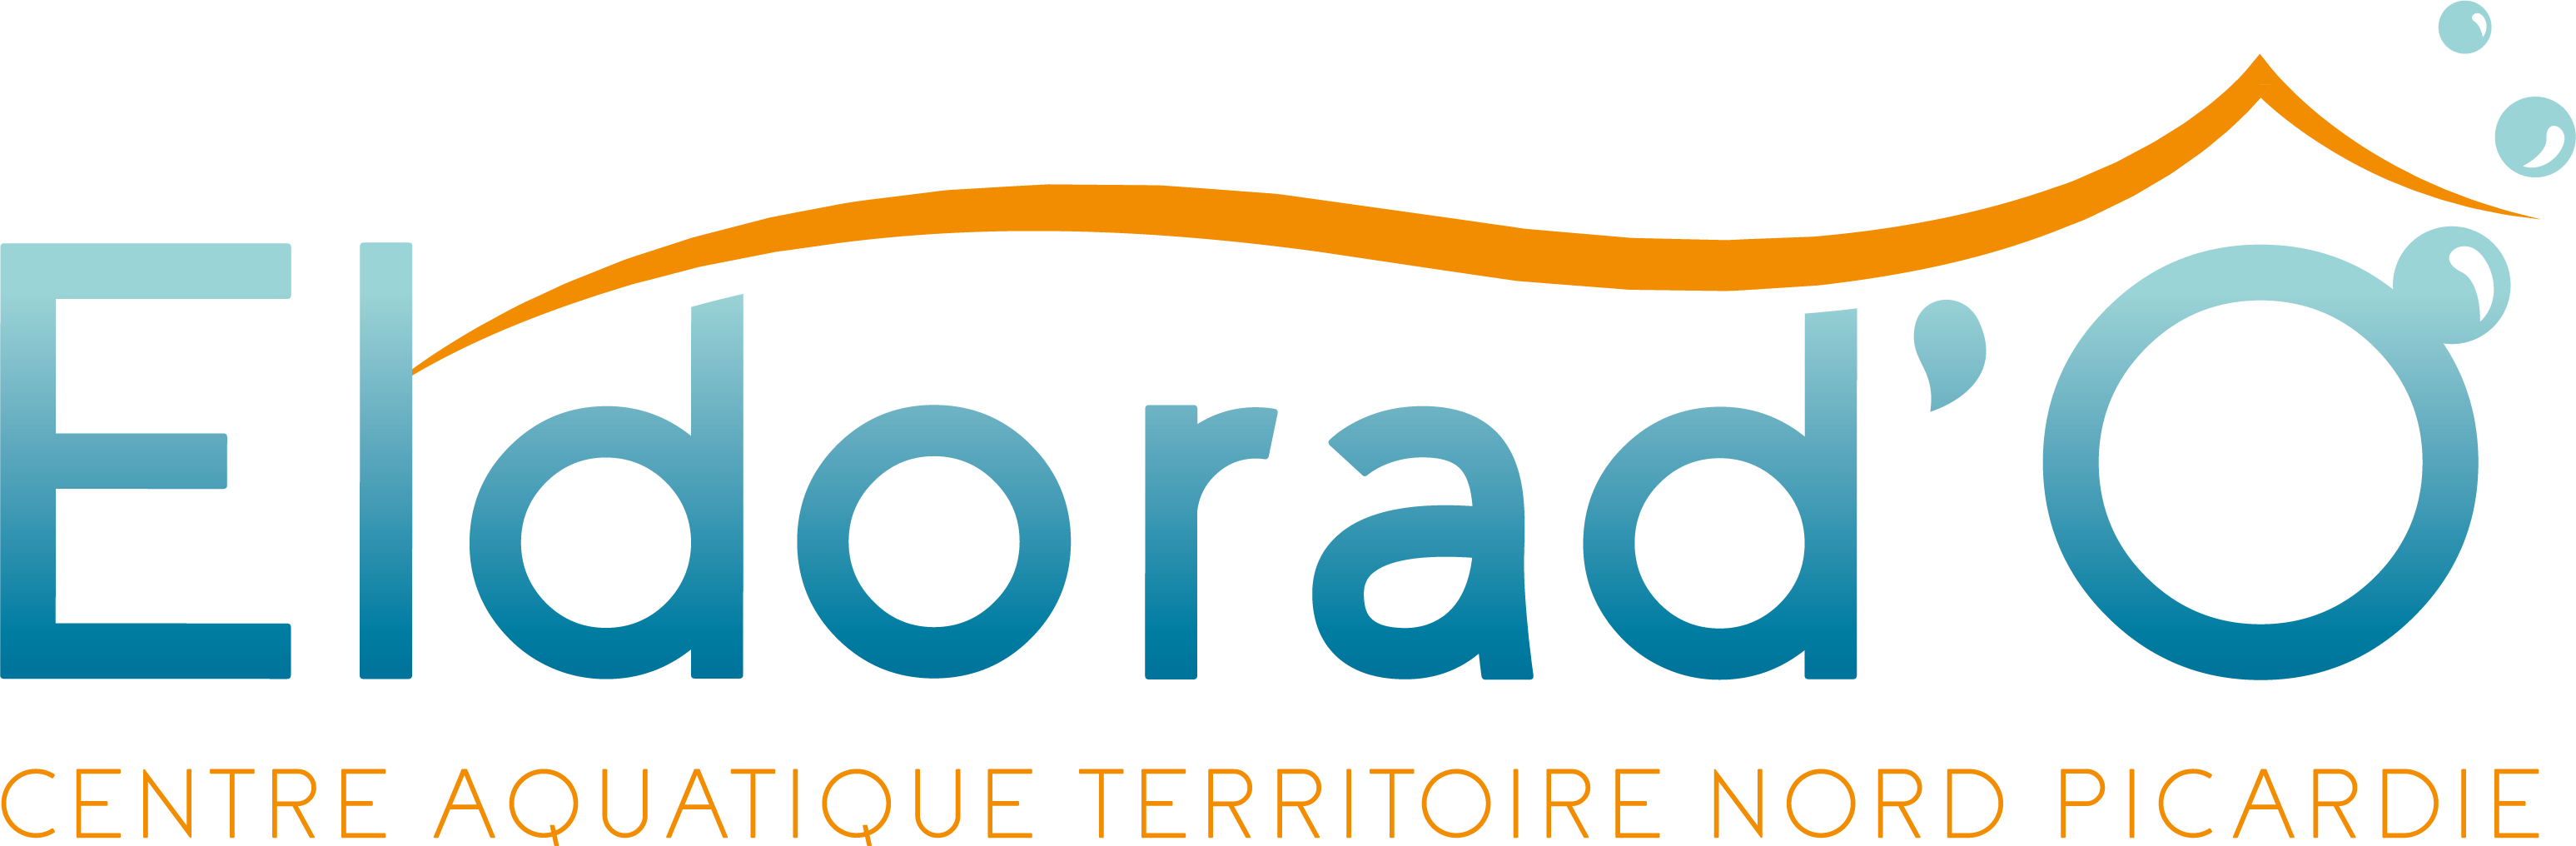 Logo CENTRE AQUATIQUE ELDORAD'O